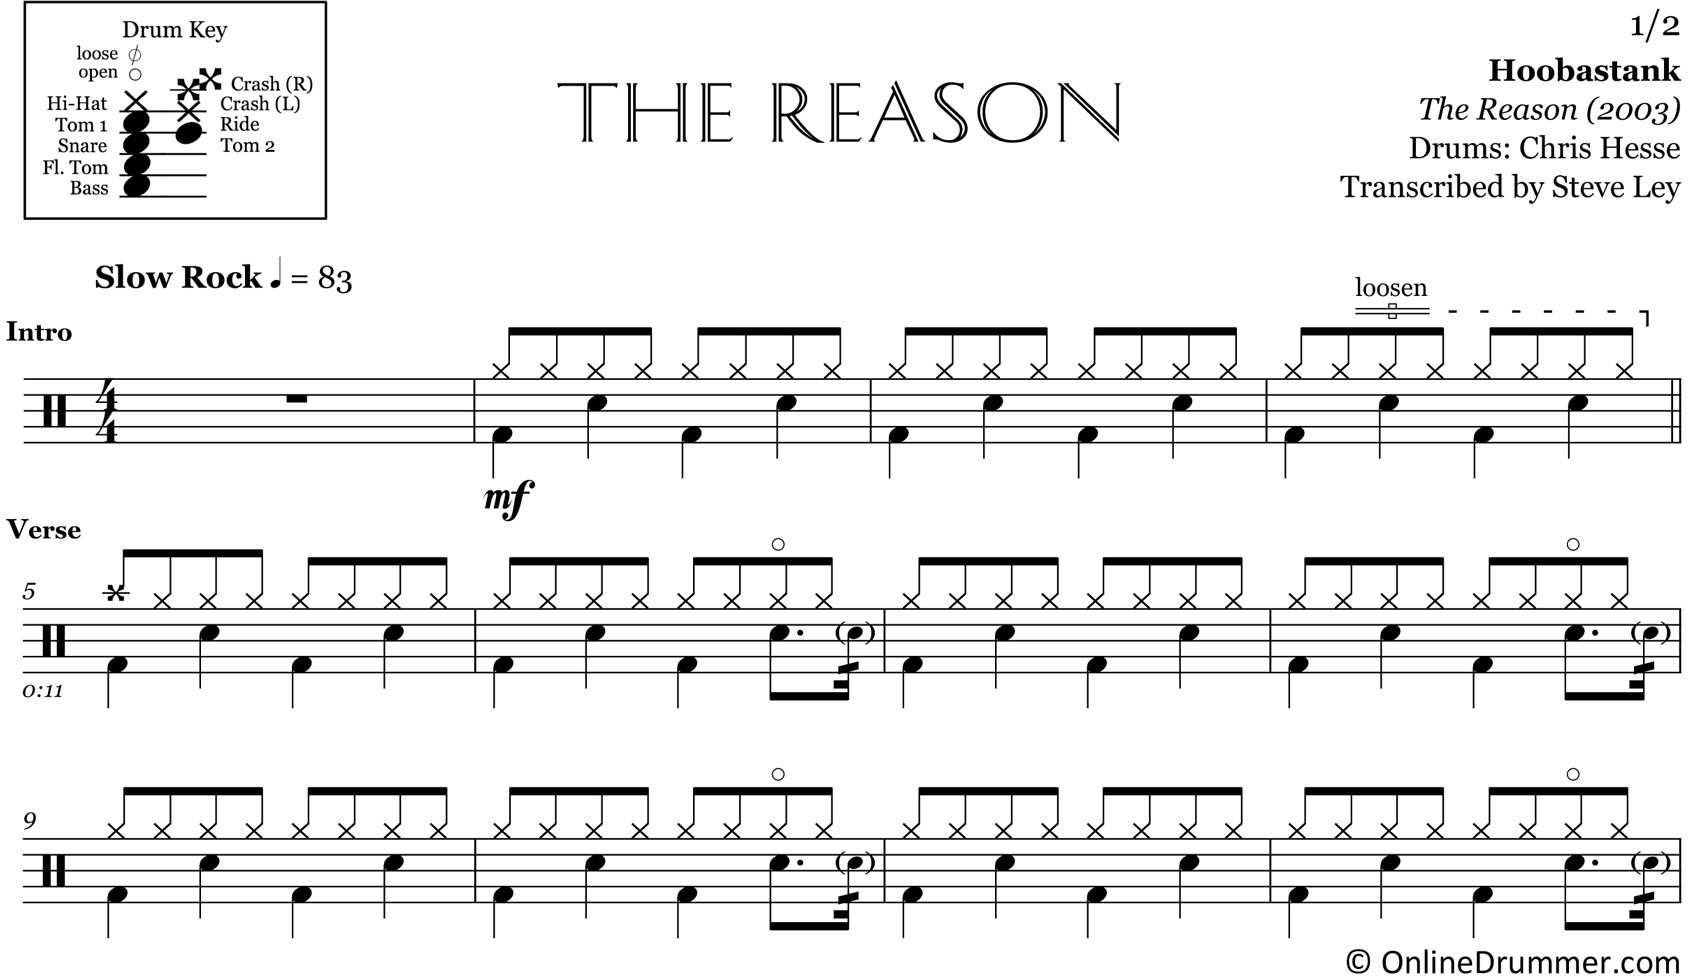 The Reason - Hoobastank - Drum Sheet Music